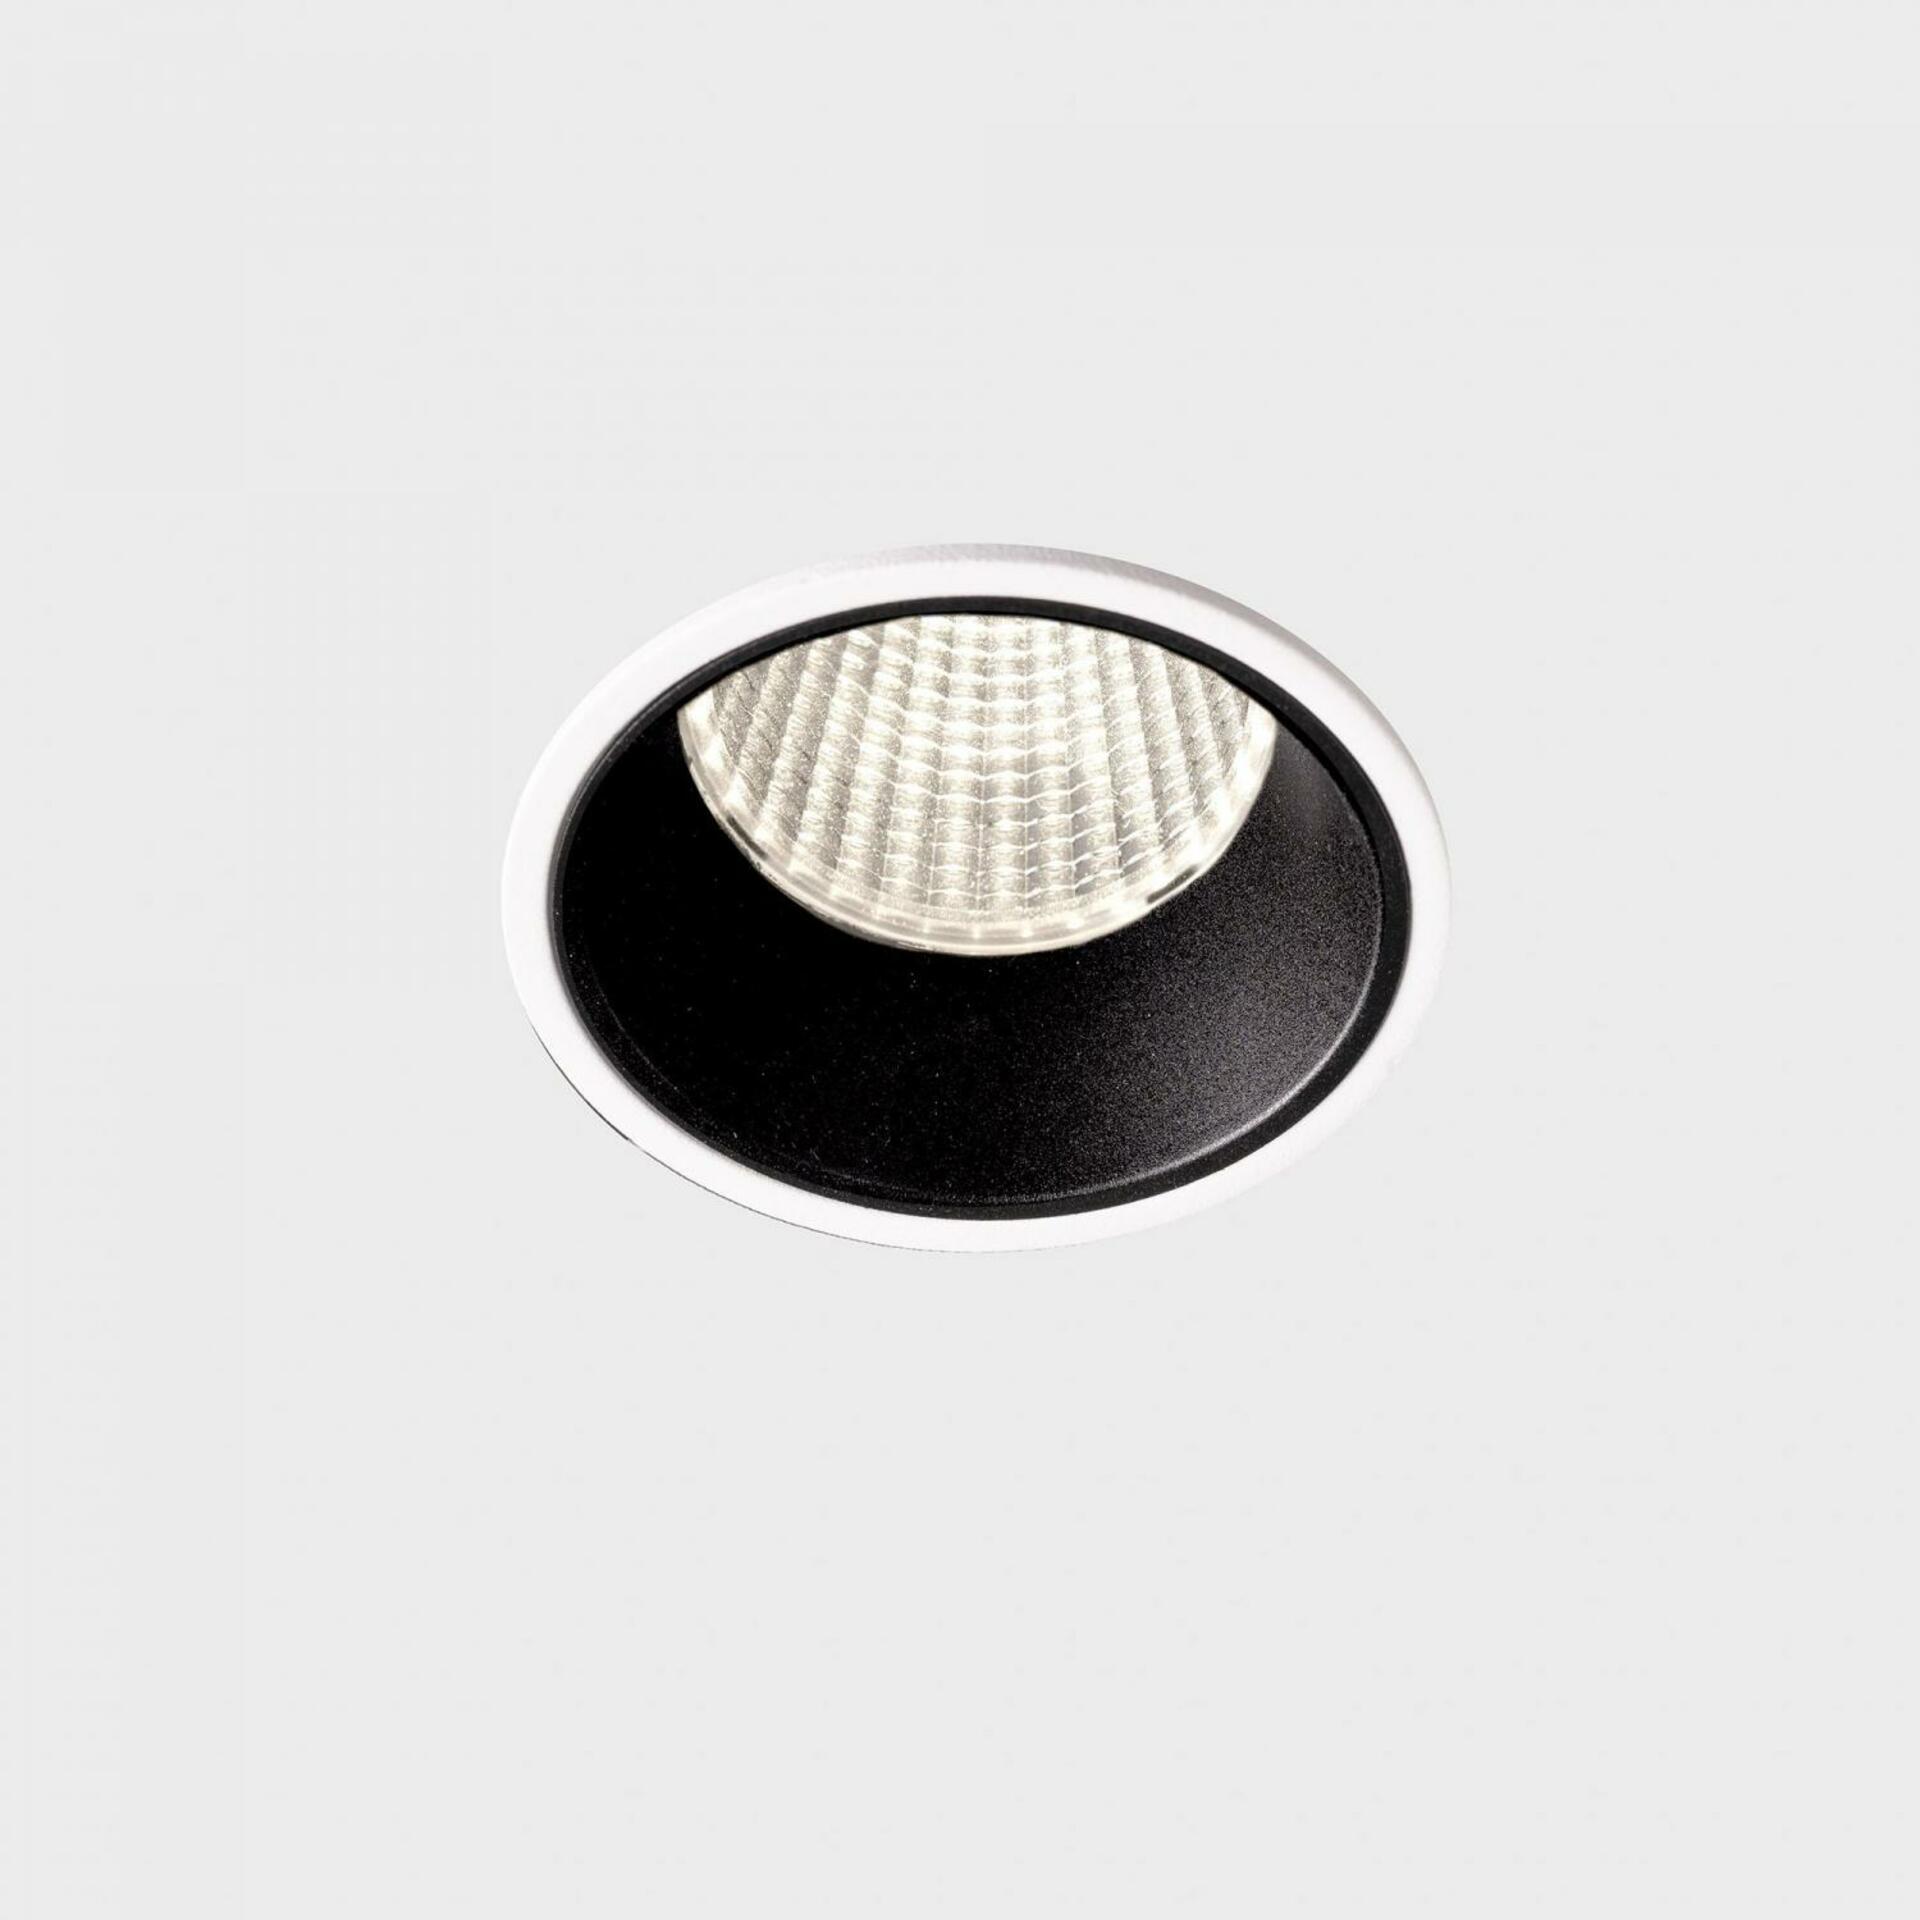 KOHL LIGHTING KOHL-Lighting VERSUS zapuštěné svítidlo s rámečkem pr. 60 mm bílá-černá 38° 5 W CRI 80 4000K 1.10V